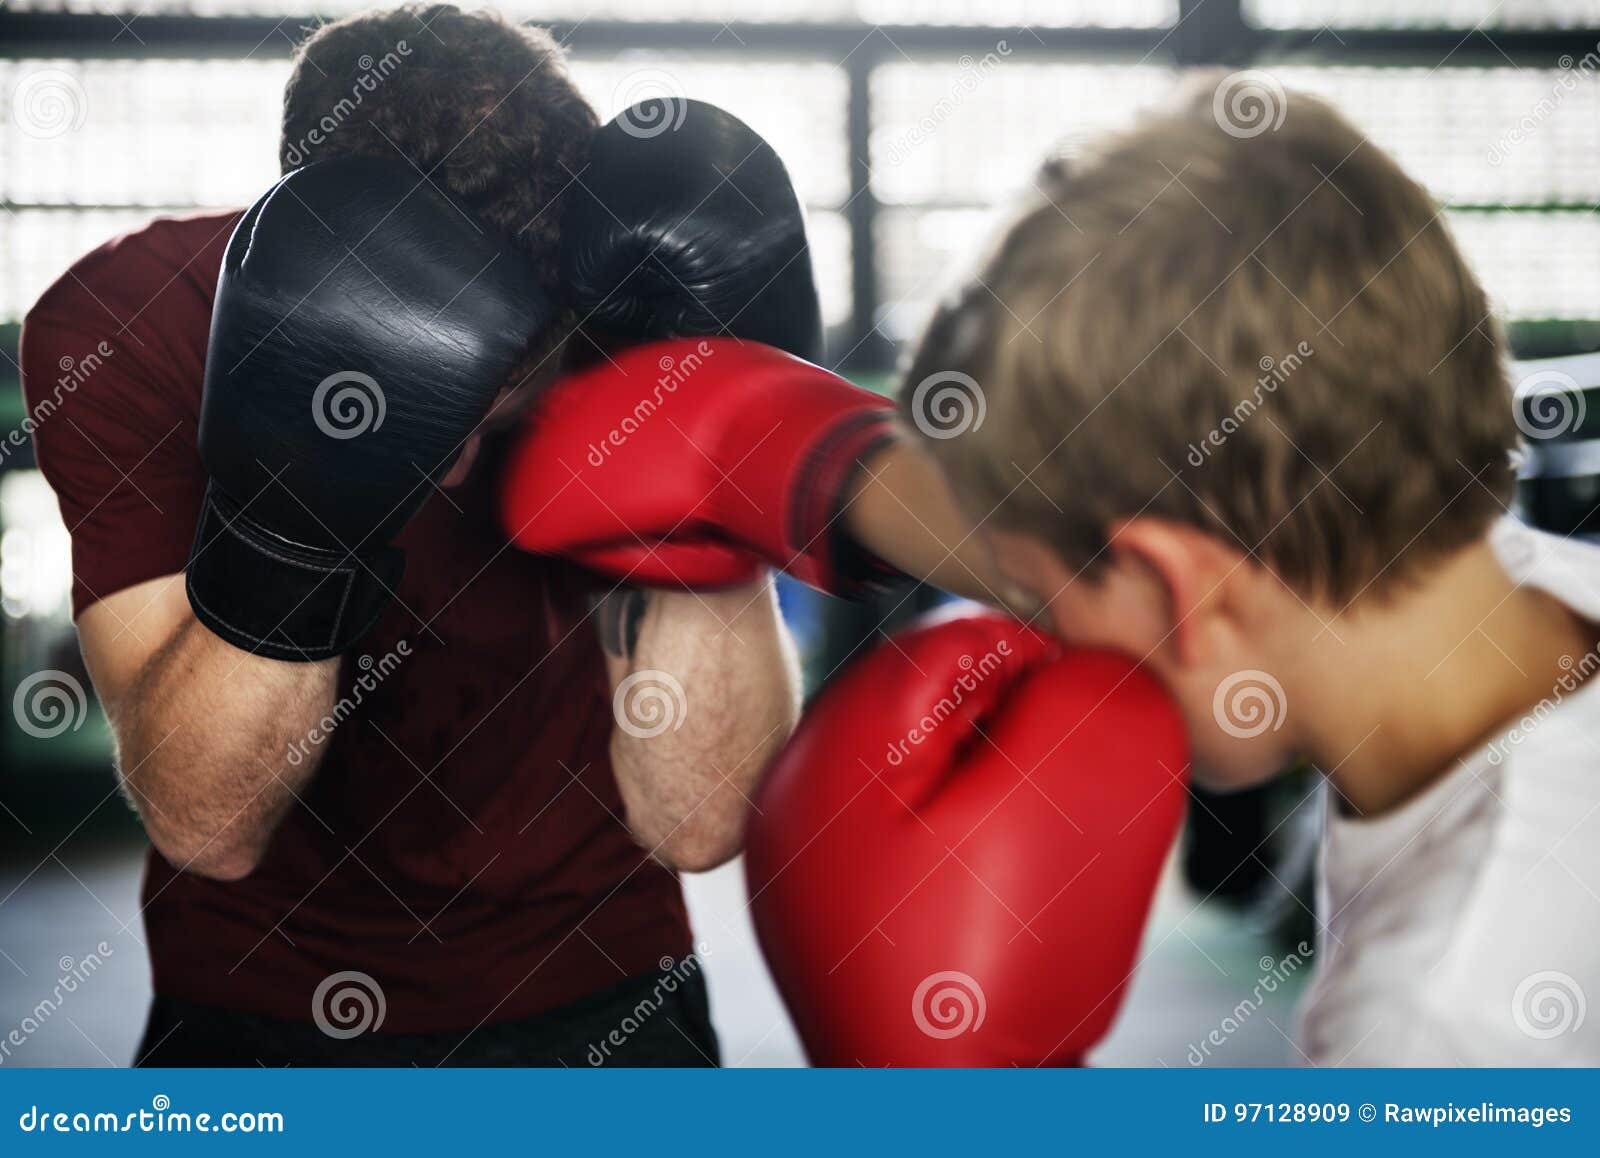 Раздумал быть боксером. Парни в боксерах. Боксер со спины. Боксер и тренер. Психологические упражнения для боксера.